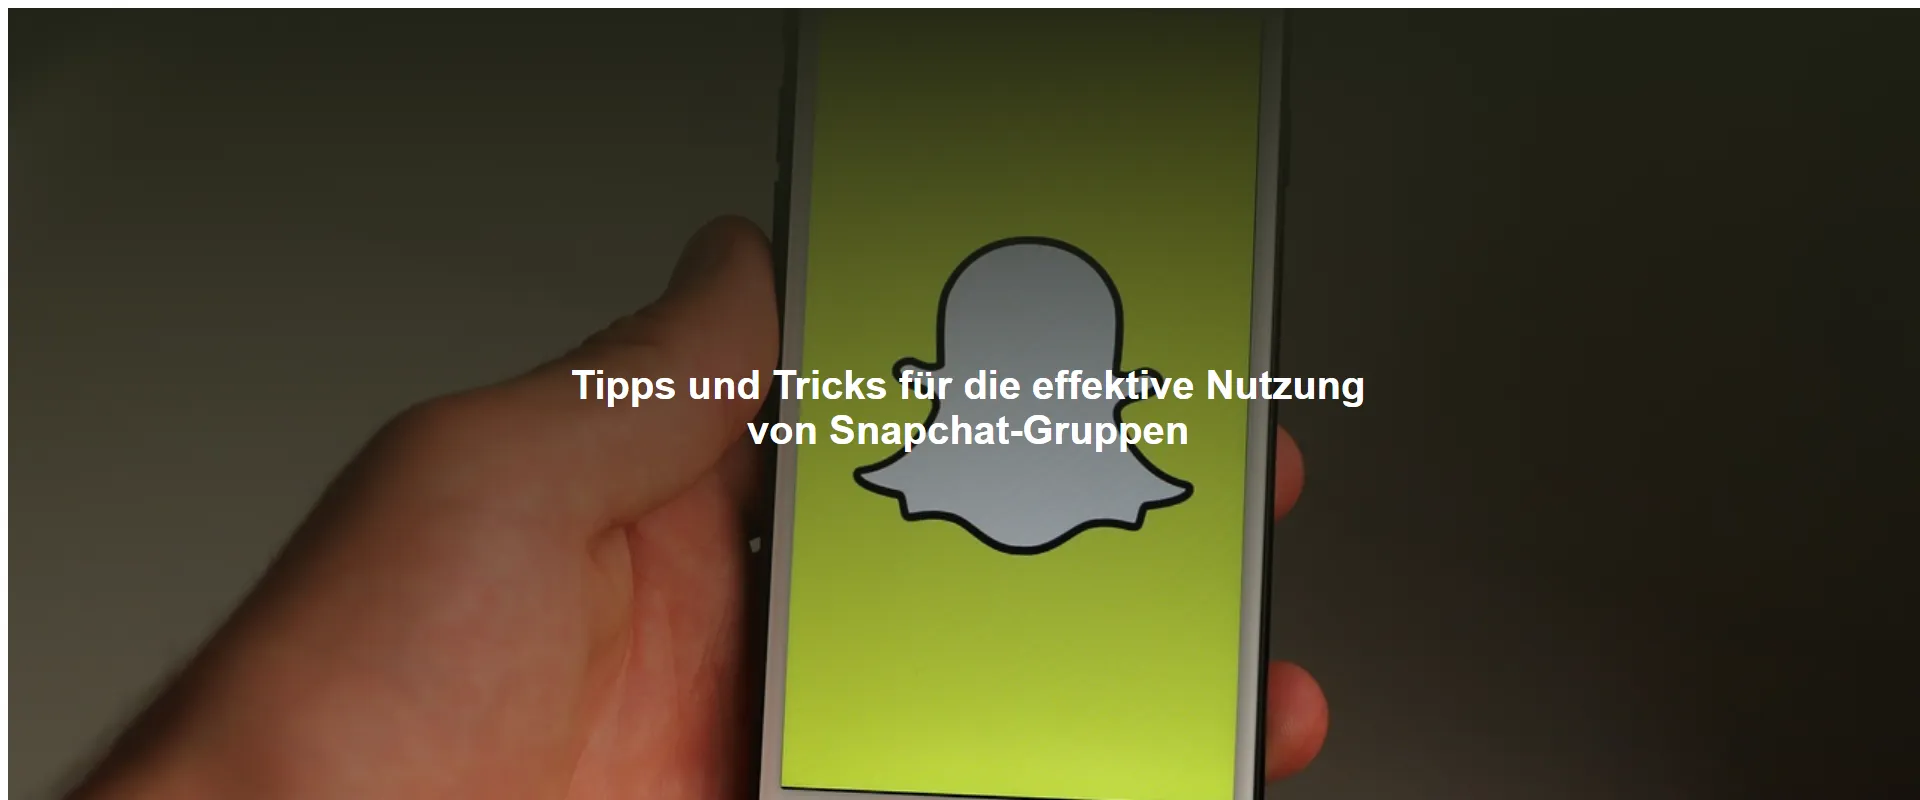 Tipps und Tricks für die effektive Nutzung von Snapchat-Gruppen